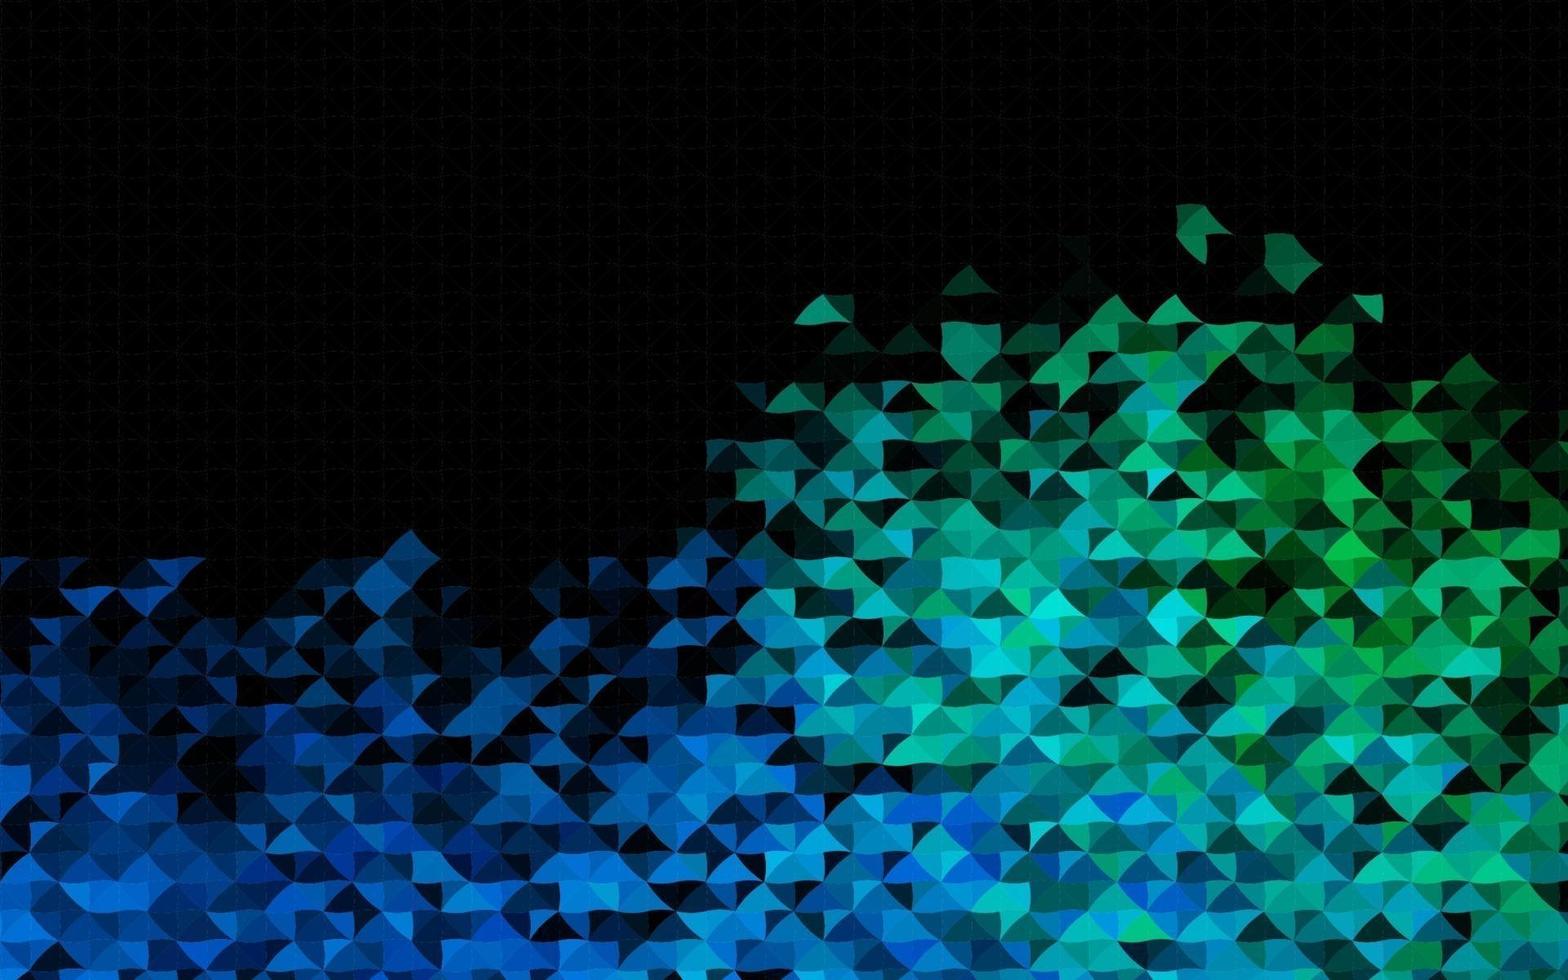 modelo de vetor azul escuro e verde com cristais, triângulos.